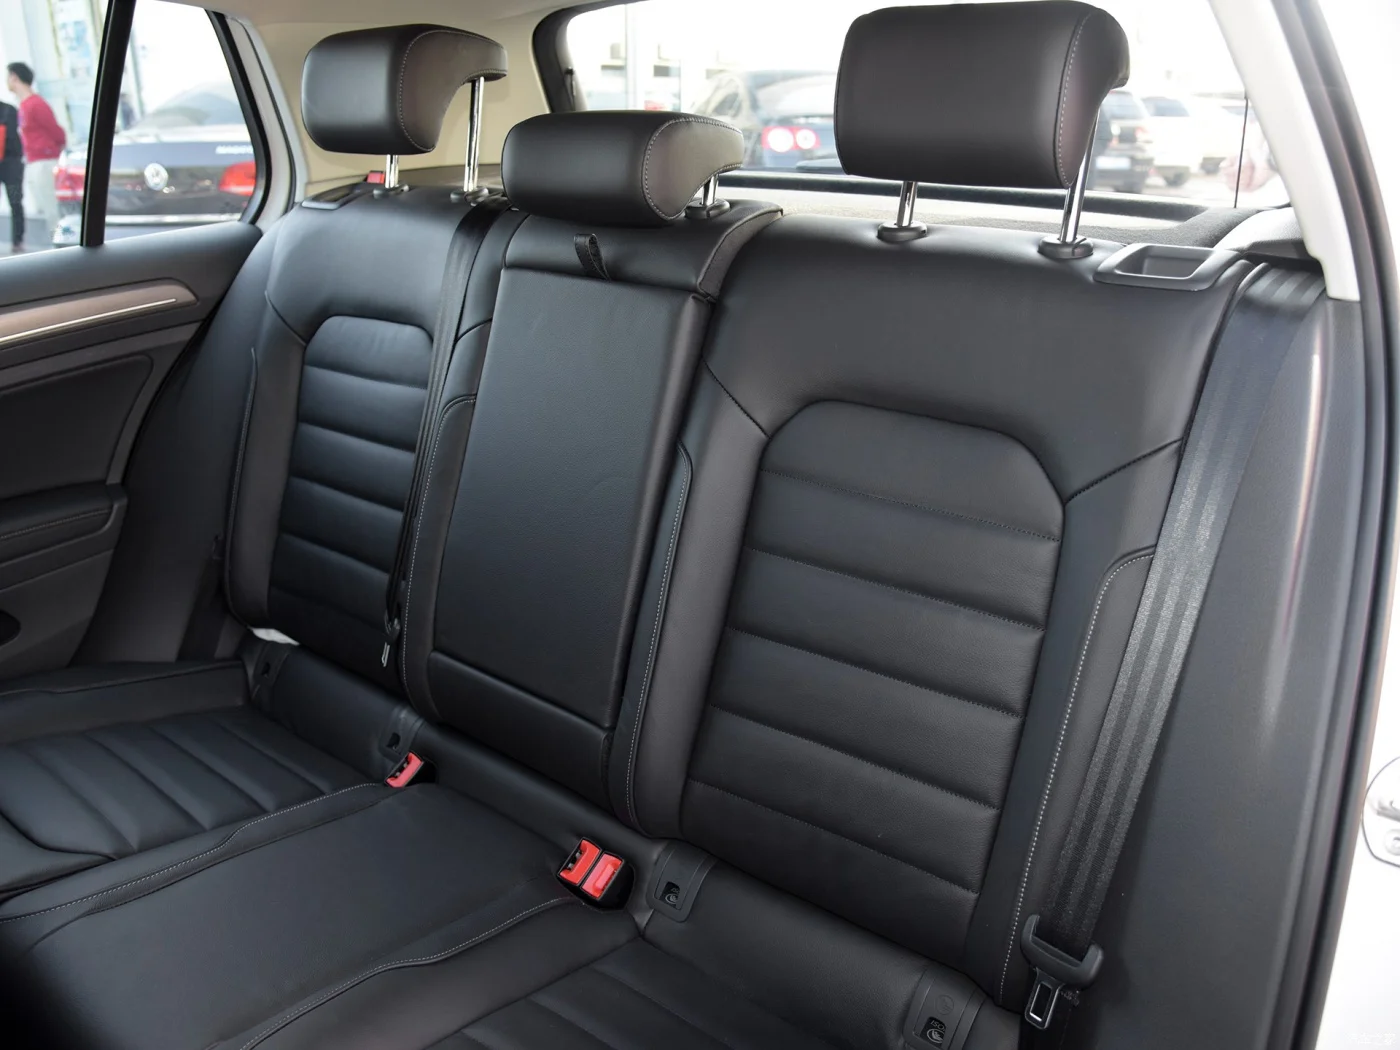 Housses de siège auto Volkswagen Golf 7 (simili cuir, ECO) – acheter dans  la boutique en ligne